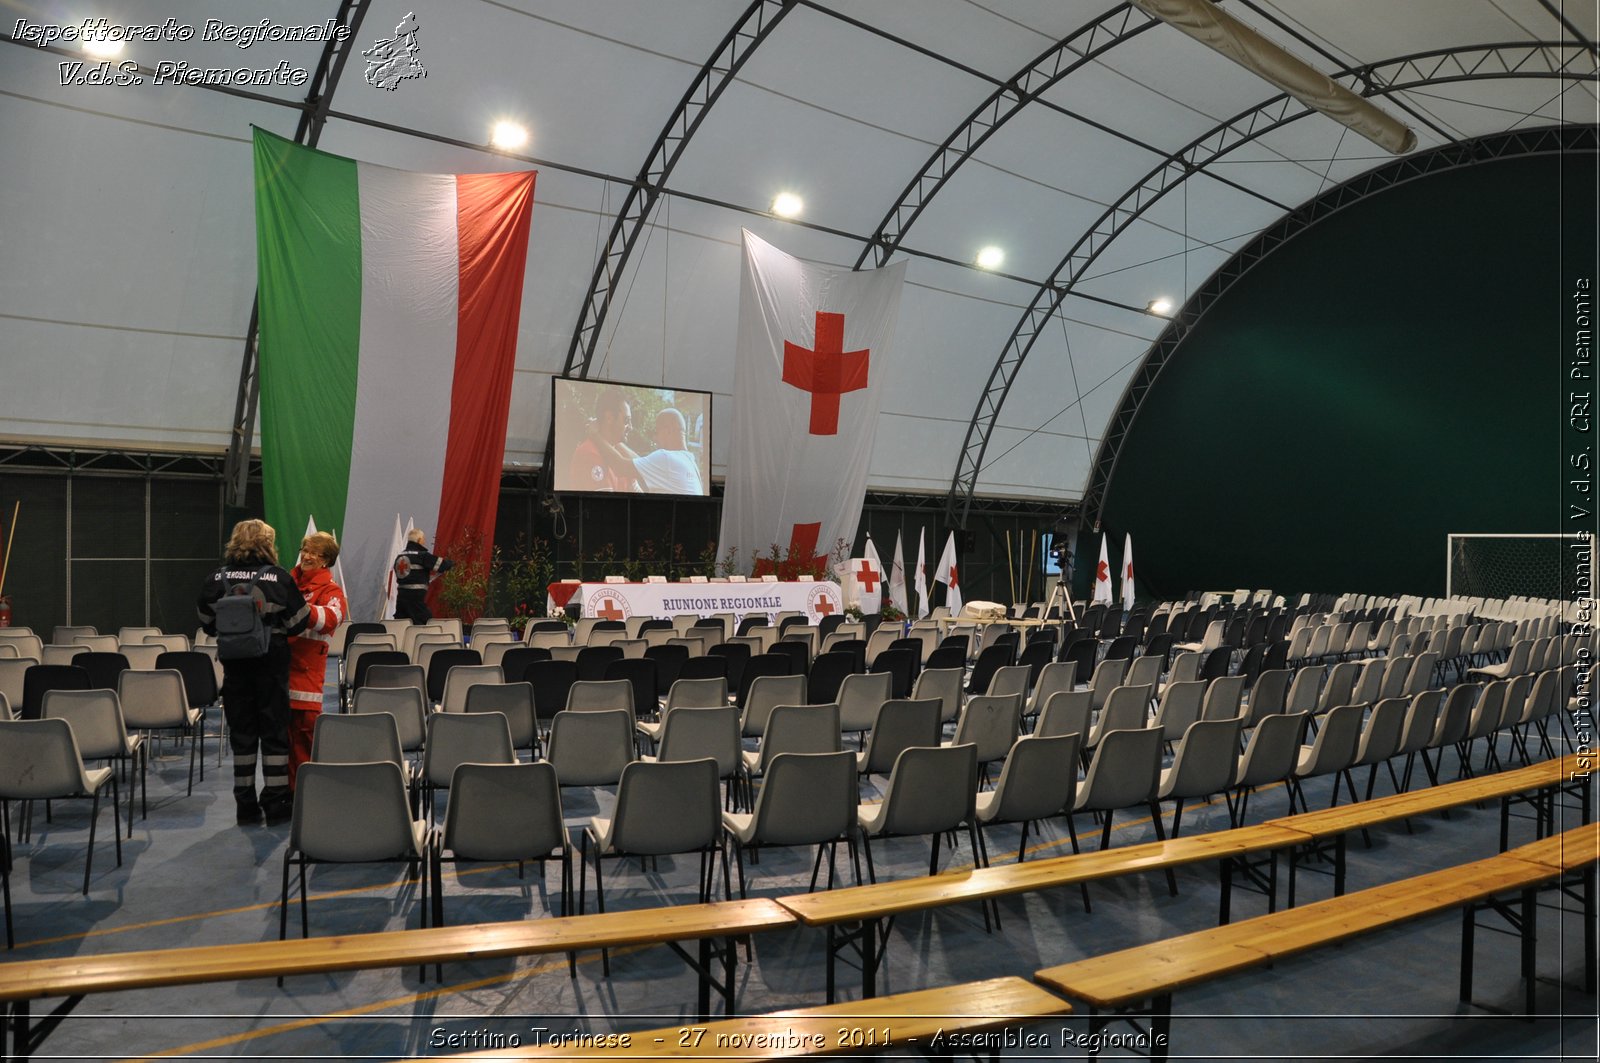 Racconigi  - 7 ottobre 2011 - Giornata del soccorso CRT -  Croce Rossa Italiana - Ispettorato Regionale Volontari del Soccorso Piemonte